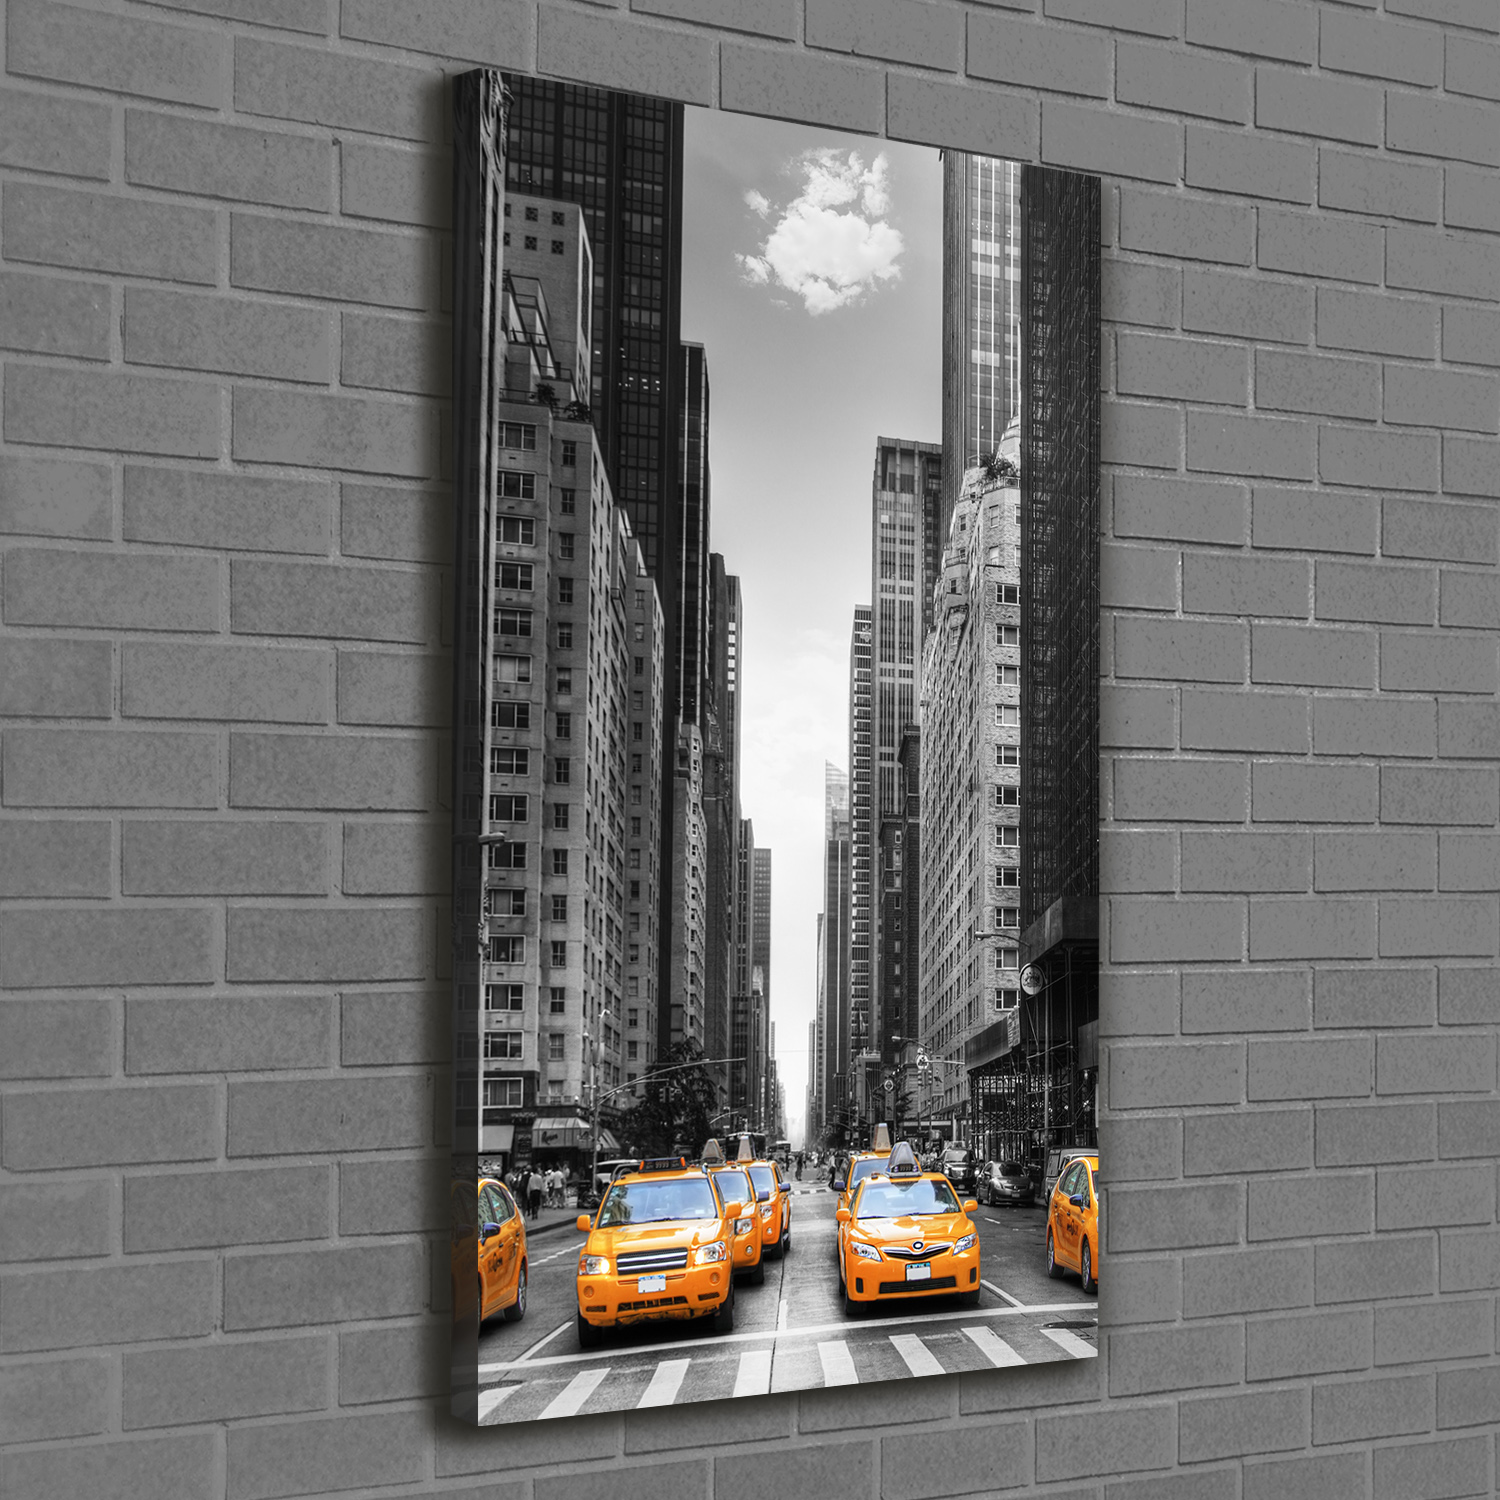 Leinwand-Bild Kunstdruck Hochformat 60x120 Bilder Taxis New York